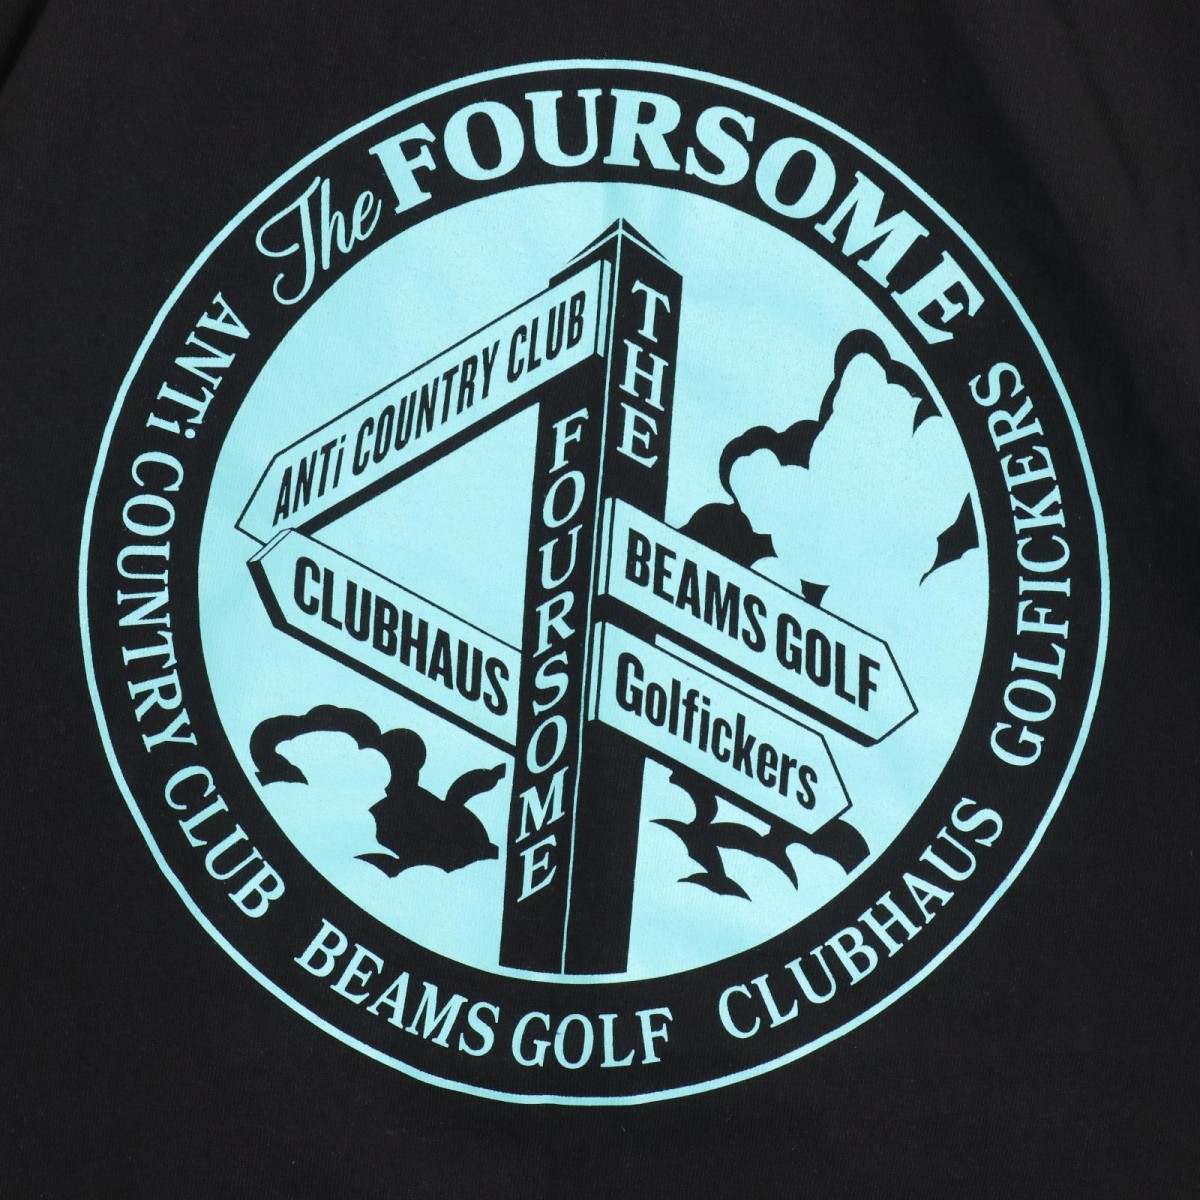 The Foursome アンタイカントリークラブ ゴルフィッカーズ クラブハウス ビームス ゴルフ Tシャツ 半袖 カットソー 表記サイズXL_画像5